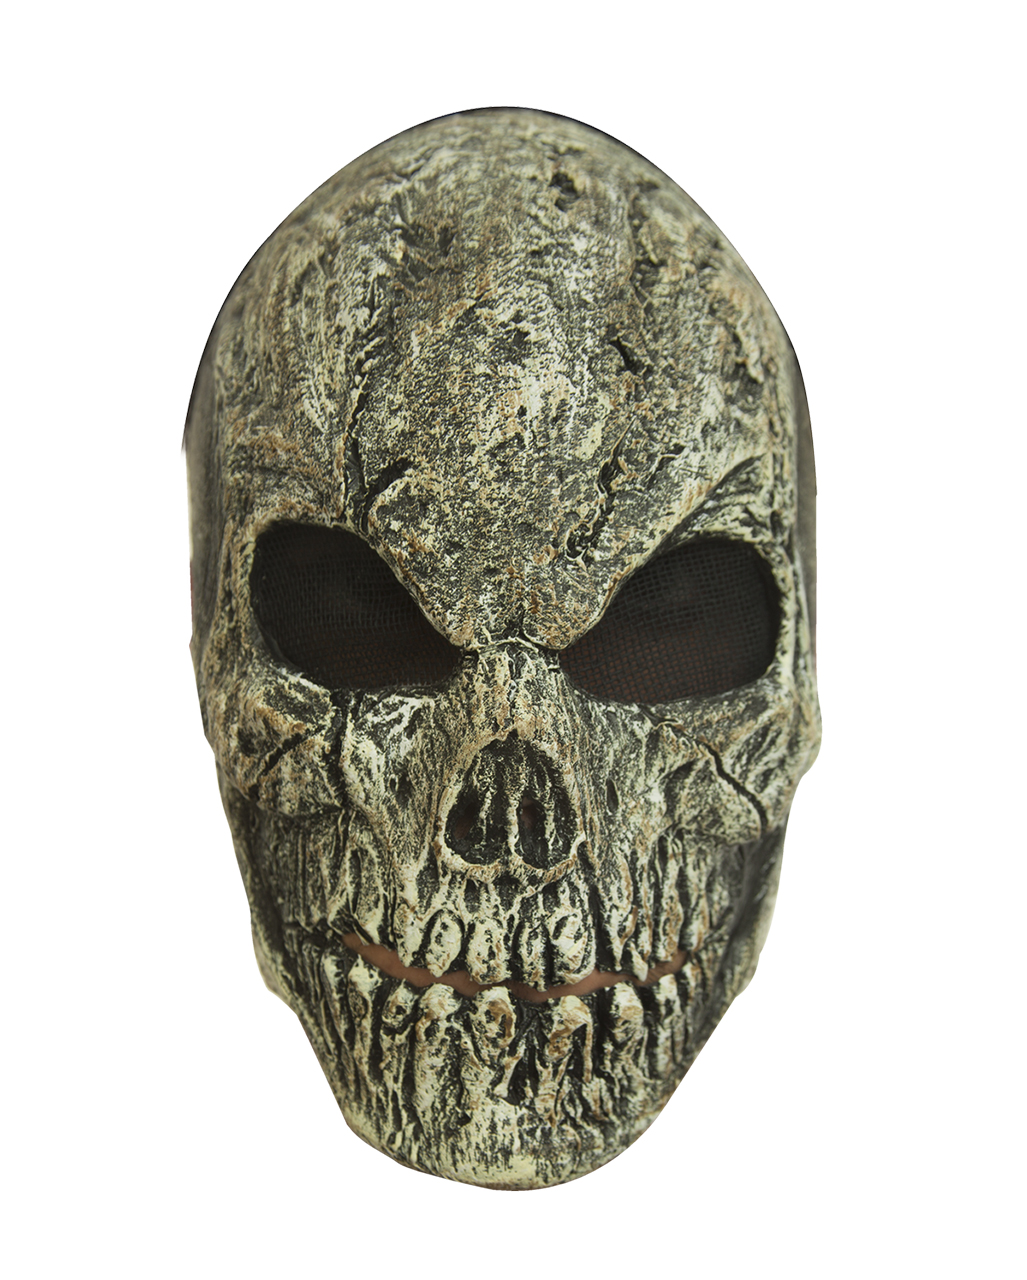 Antike Totenschädel Maske als Kostümzubehör kaufen von Horror-Shop.com